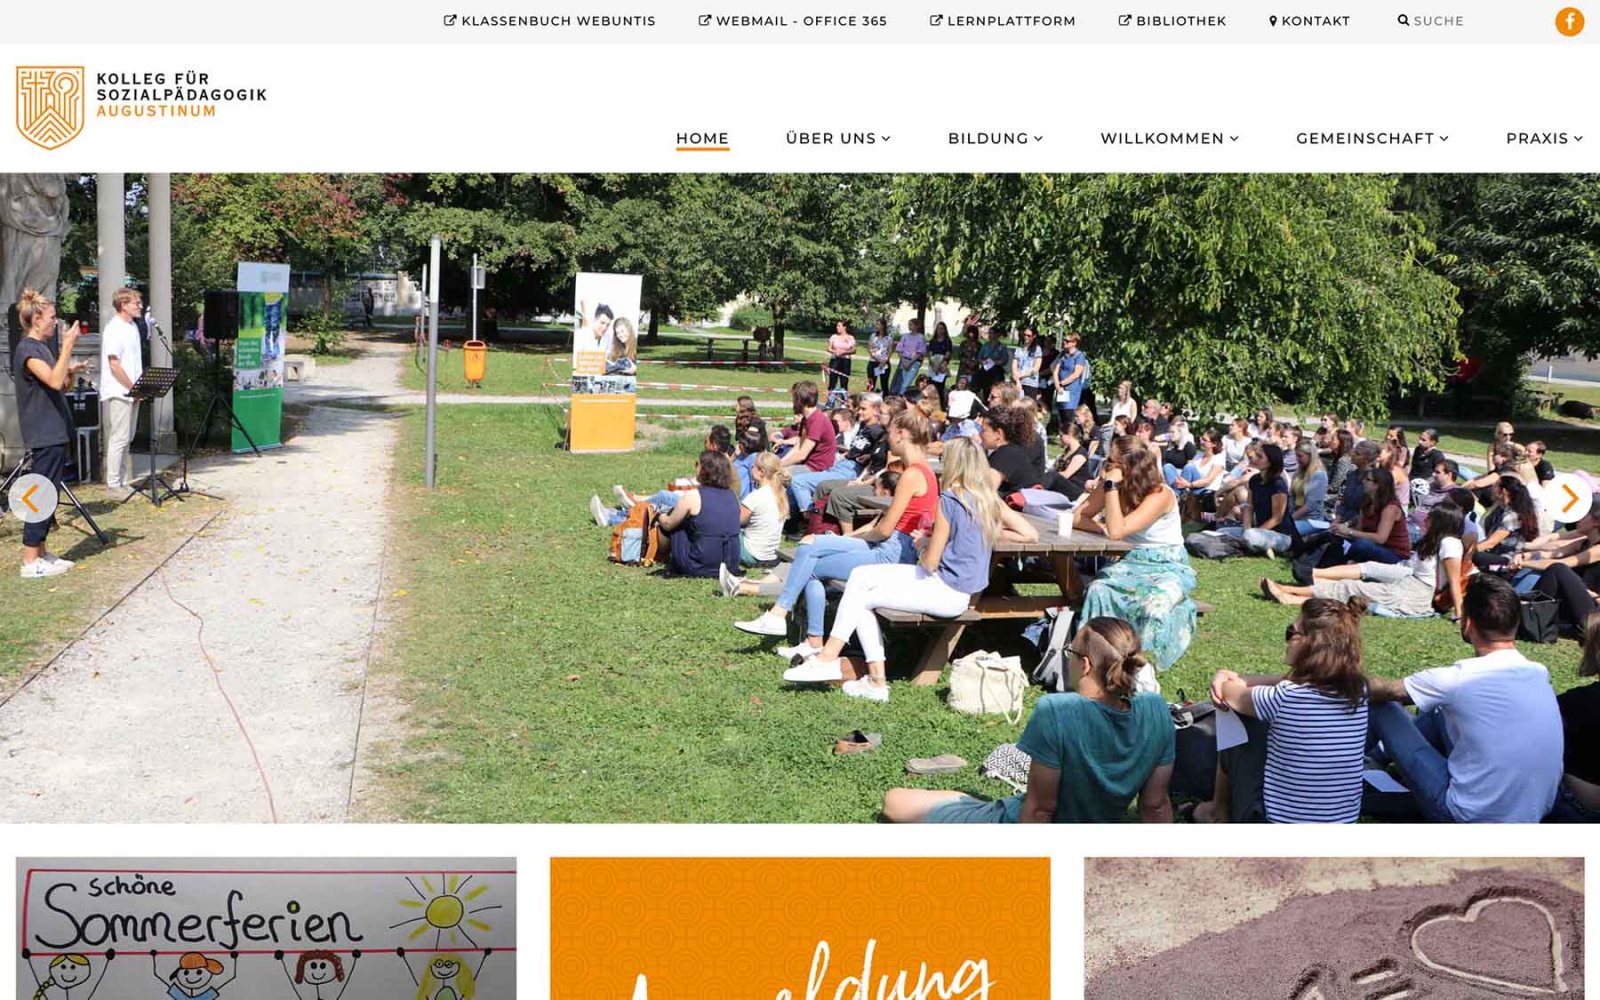 Website Augustinum Sozialpädagogik